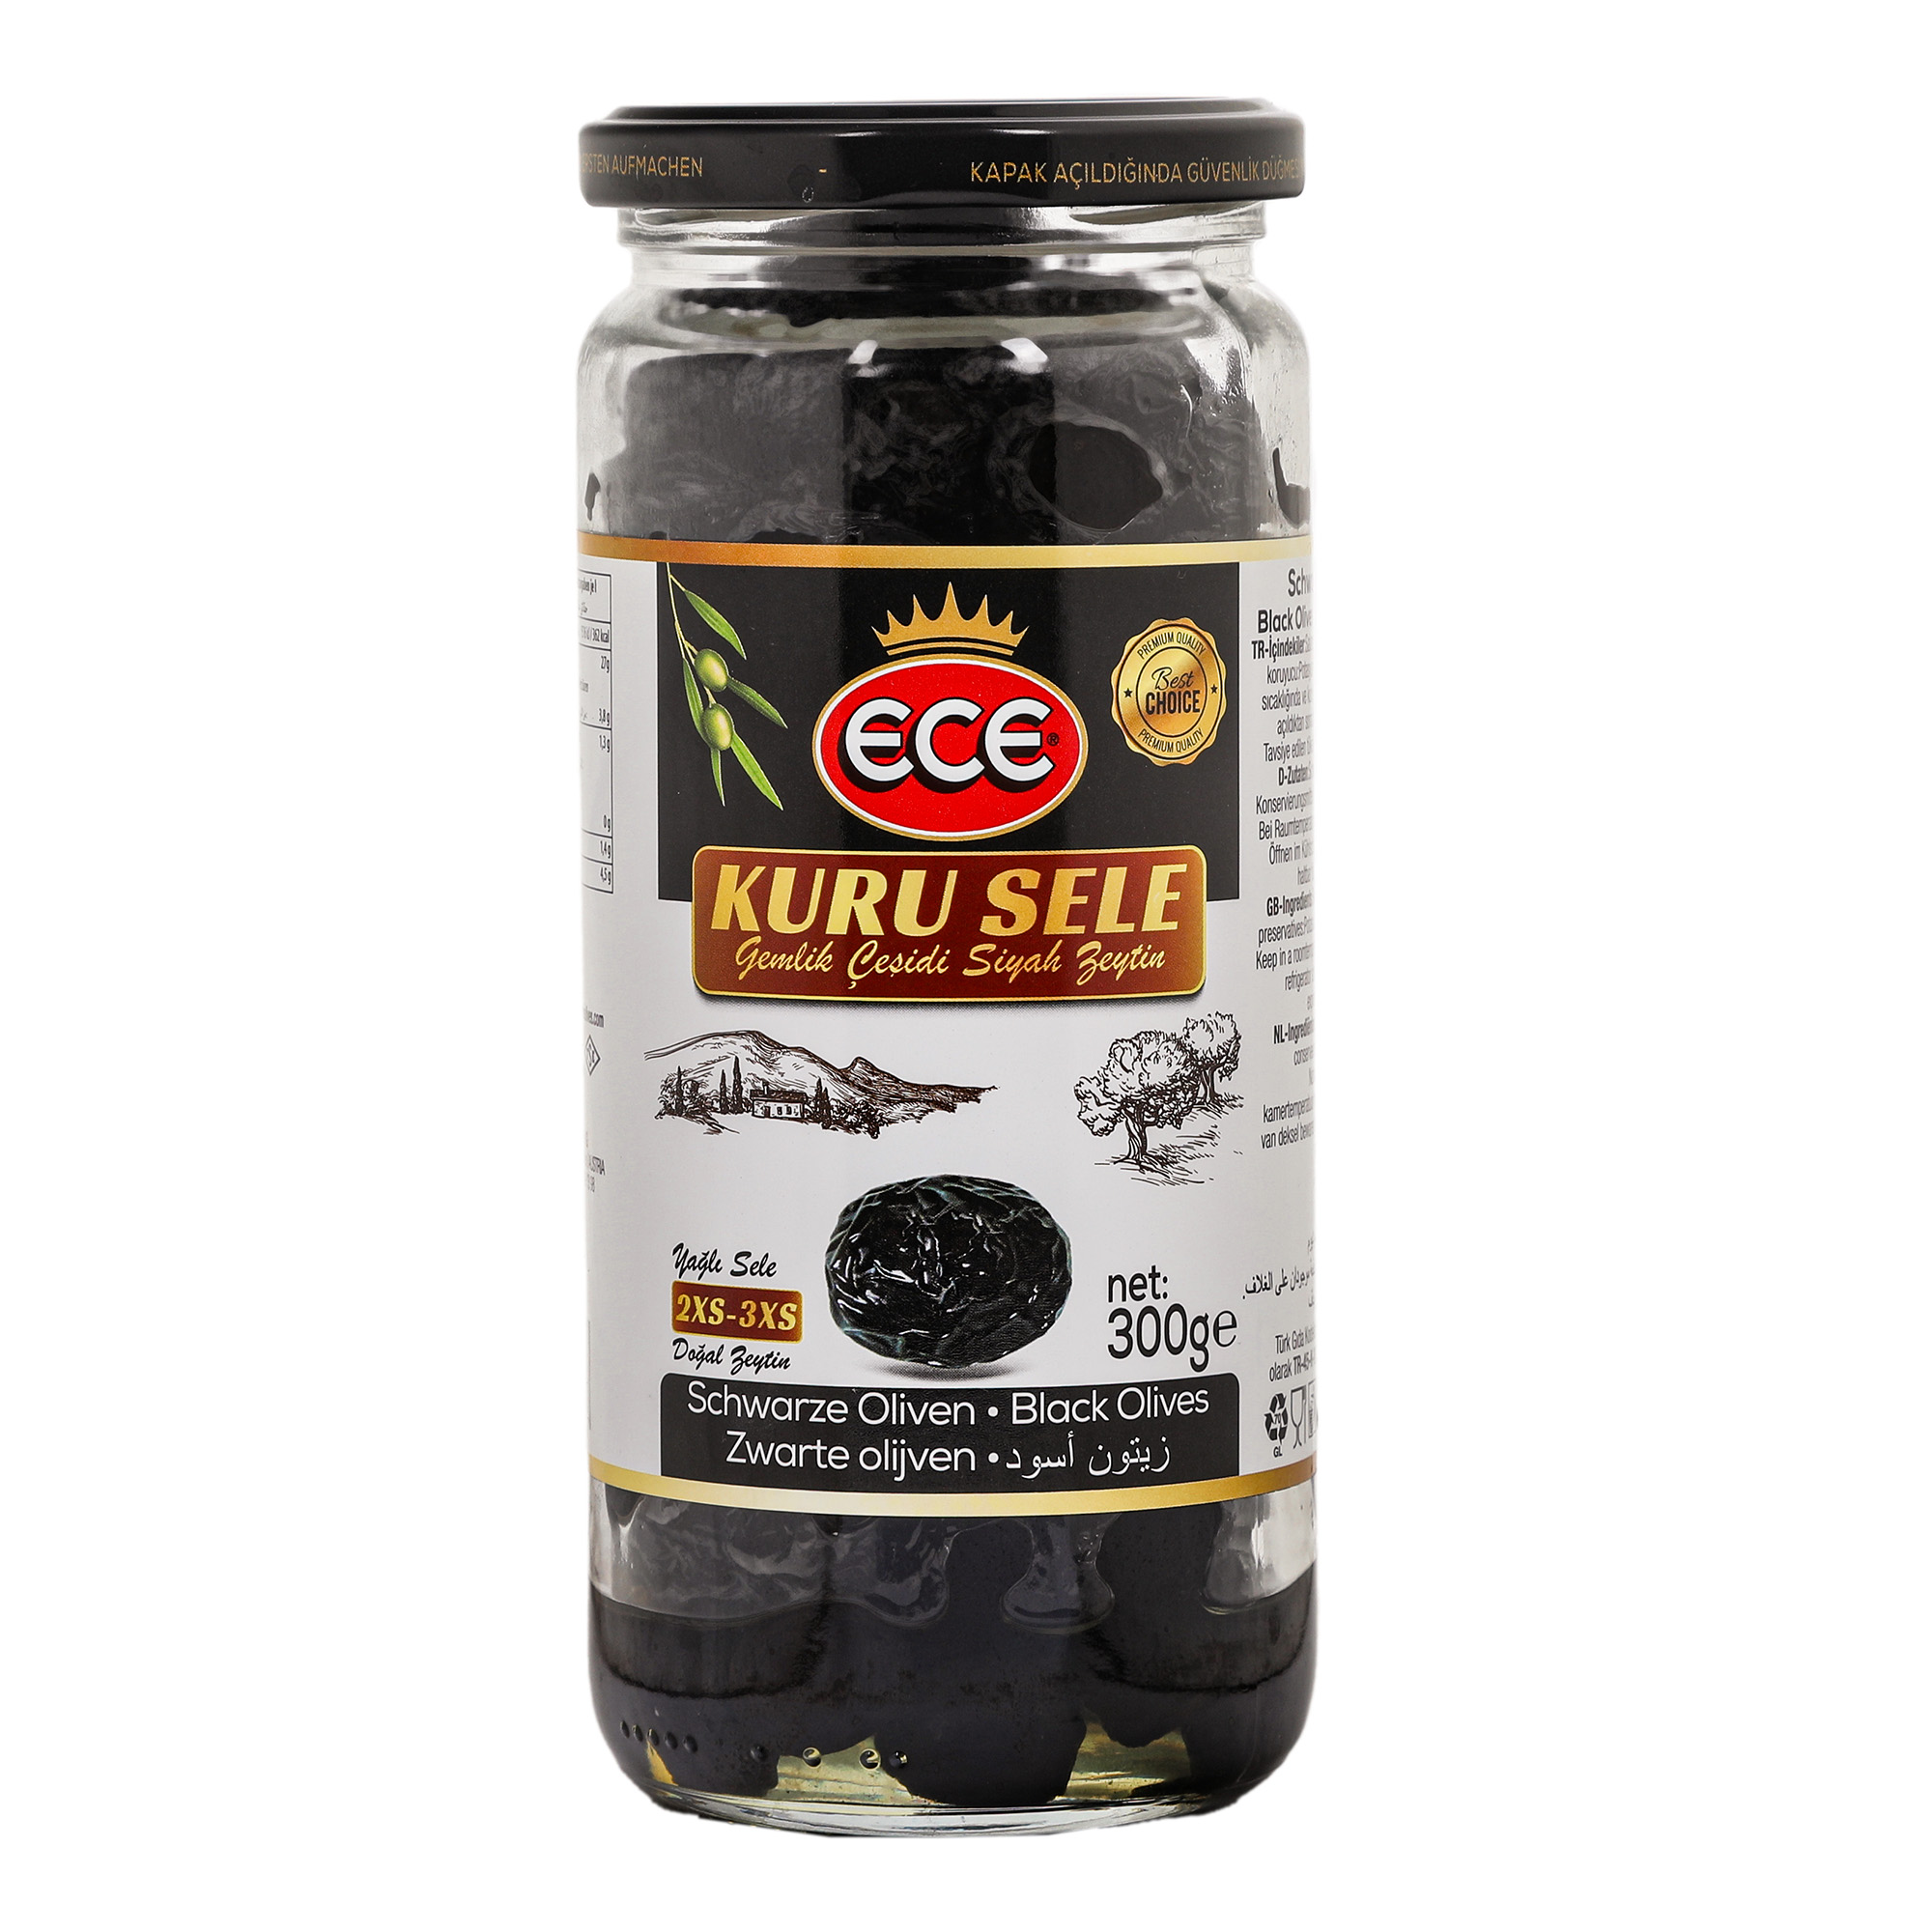 Оливки черные Ece Kuru Sele в масле с косточкой, 300 г маслины delphi с косточкой кг